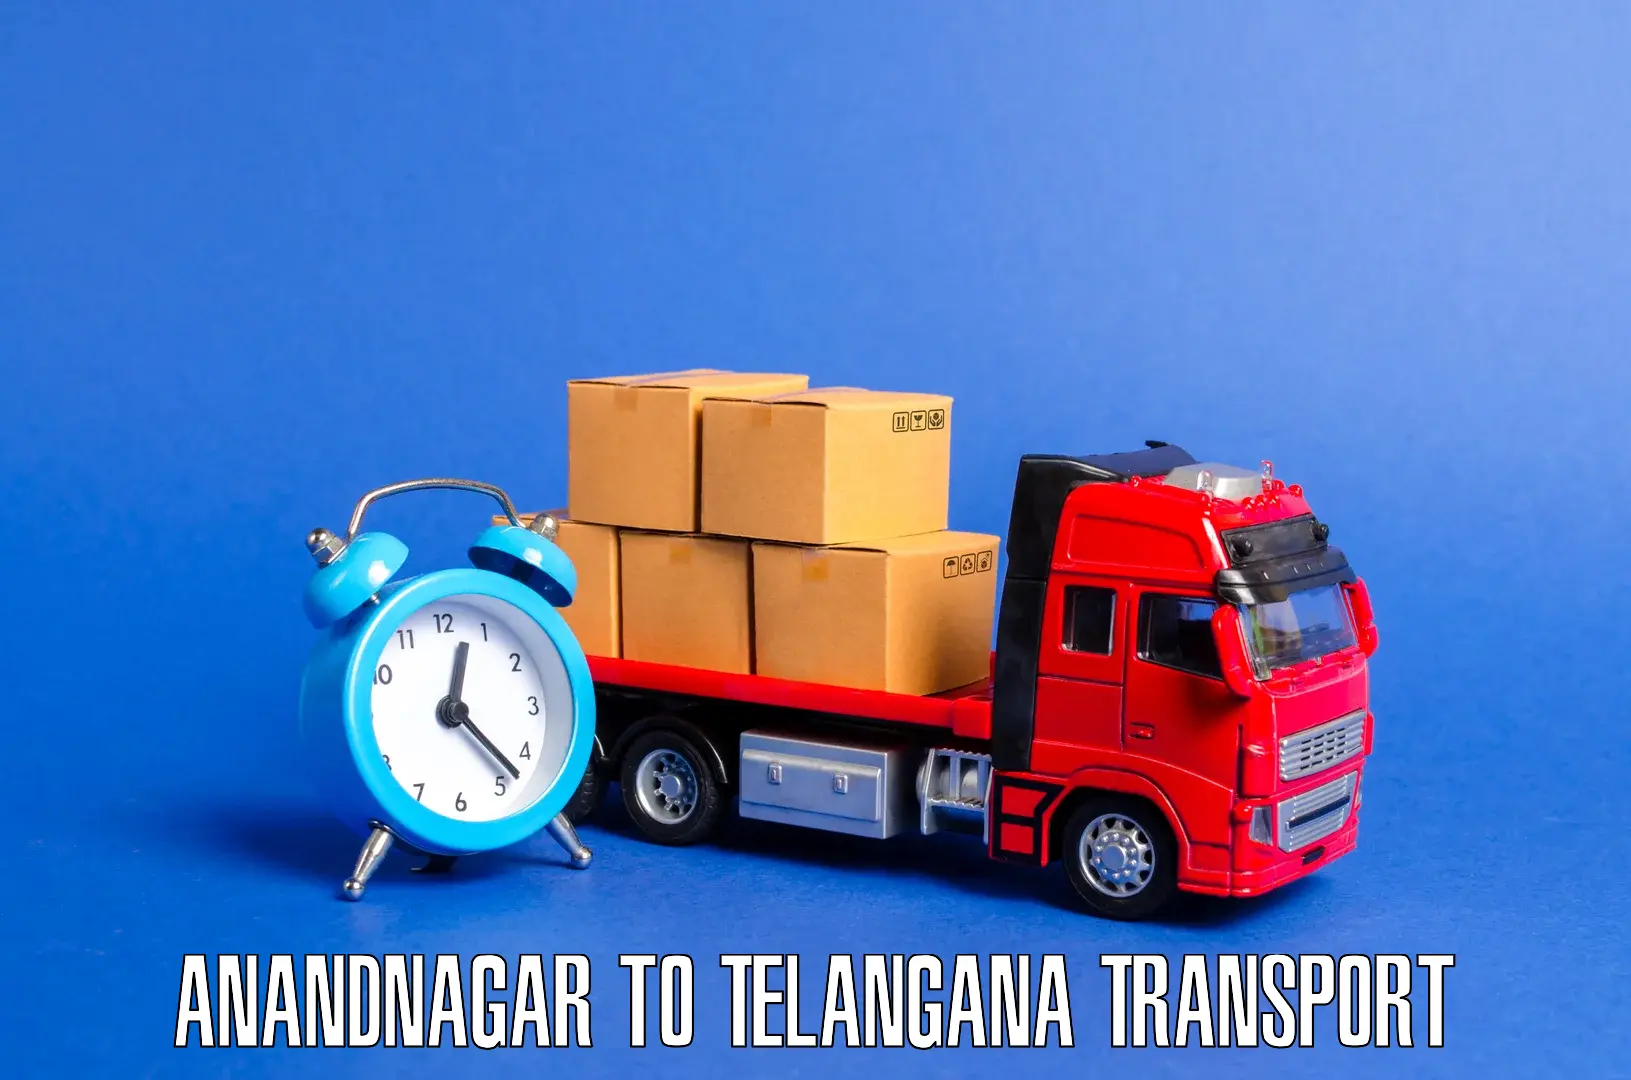 Bike transport service Anandnagar to Warangal